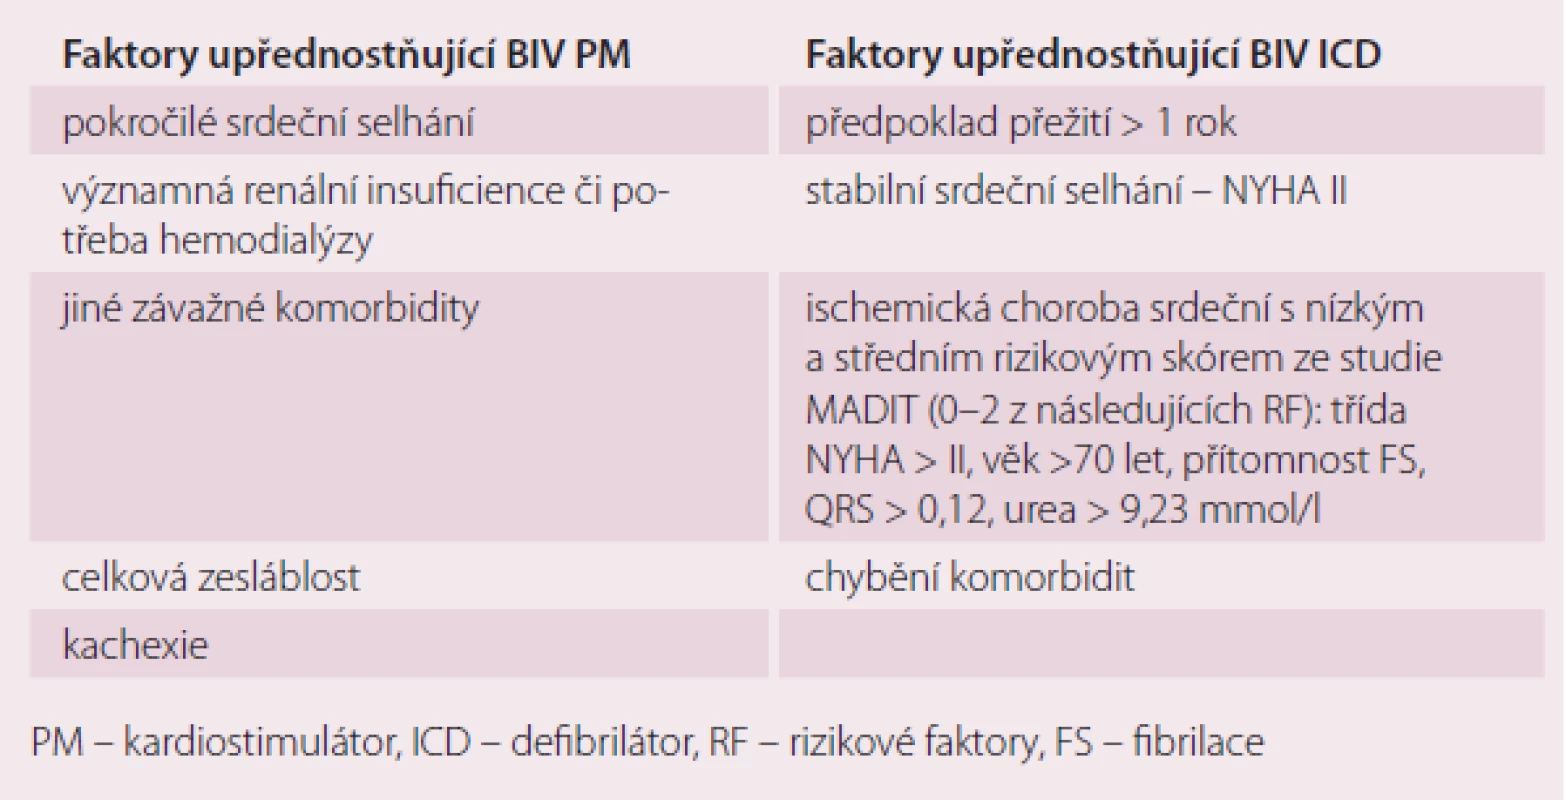 Klinická doporučení pro výběr BIV kardiostimulátoru nebo BIV defibrilátoru v primární prevenci náhlého úmrtí.